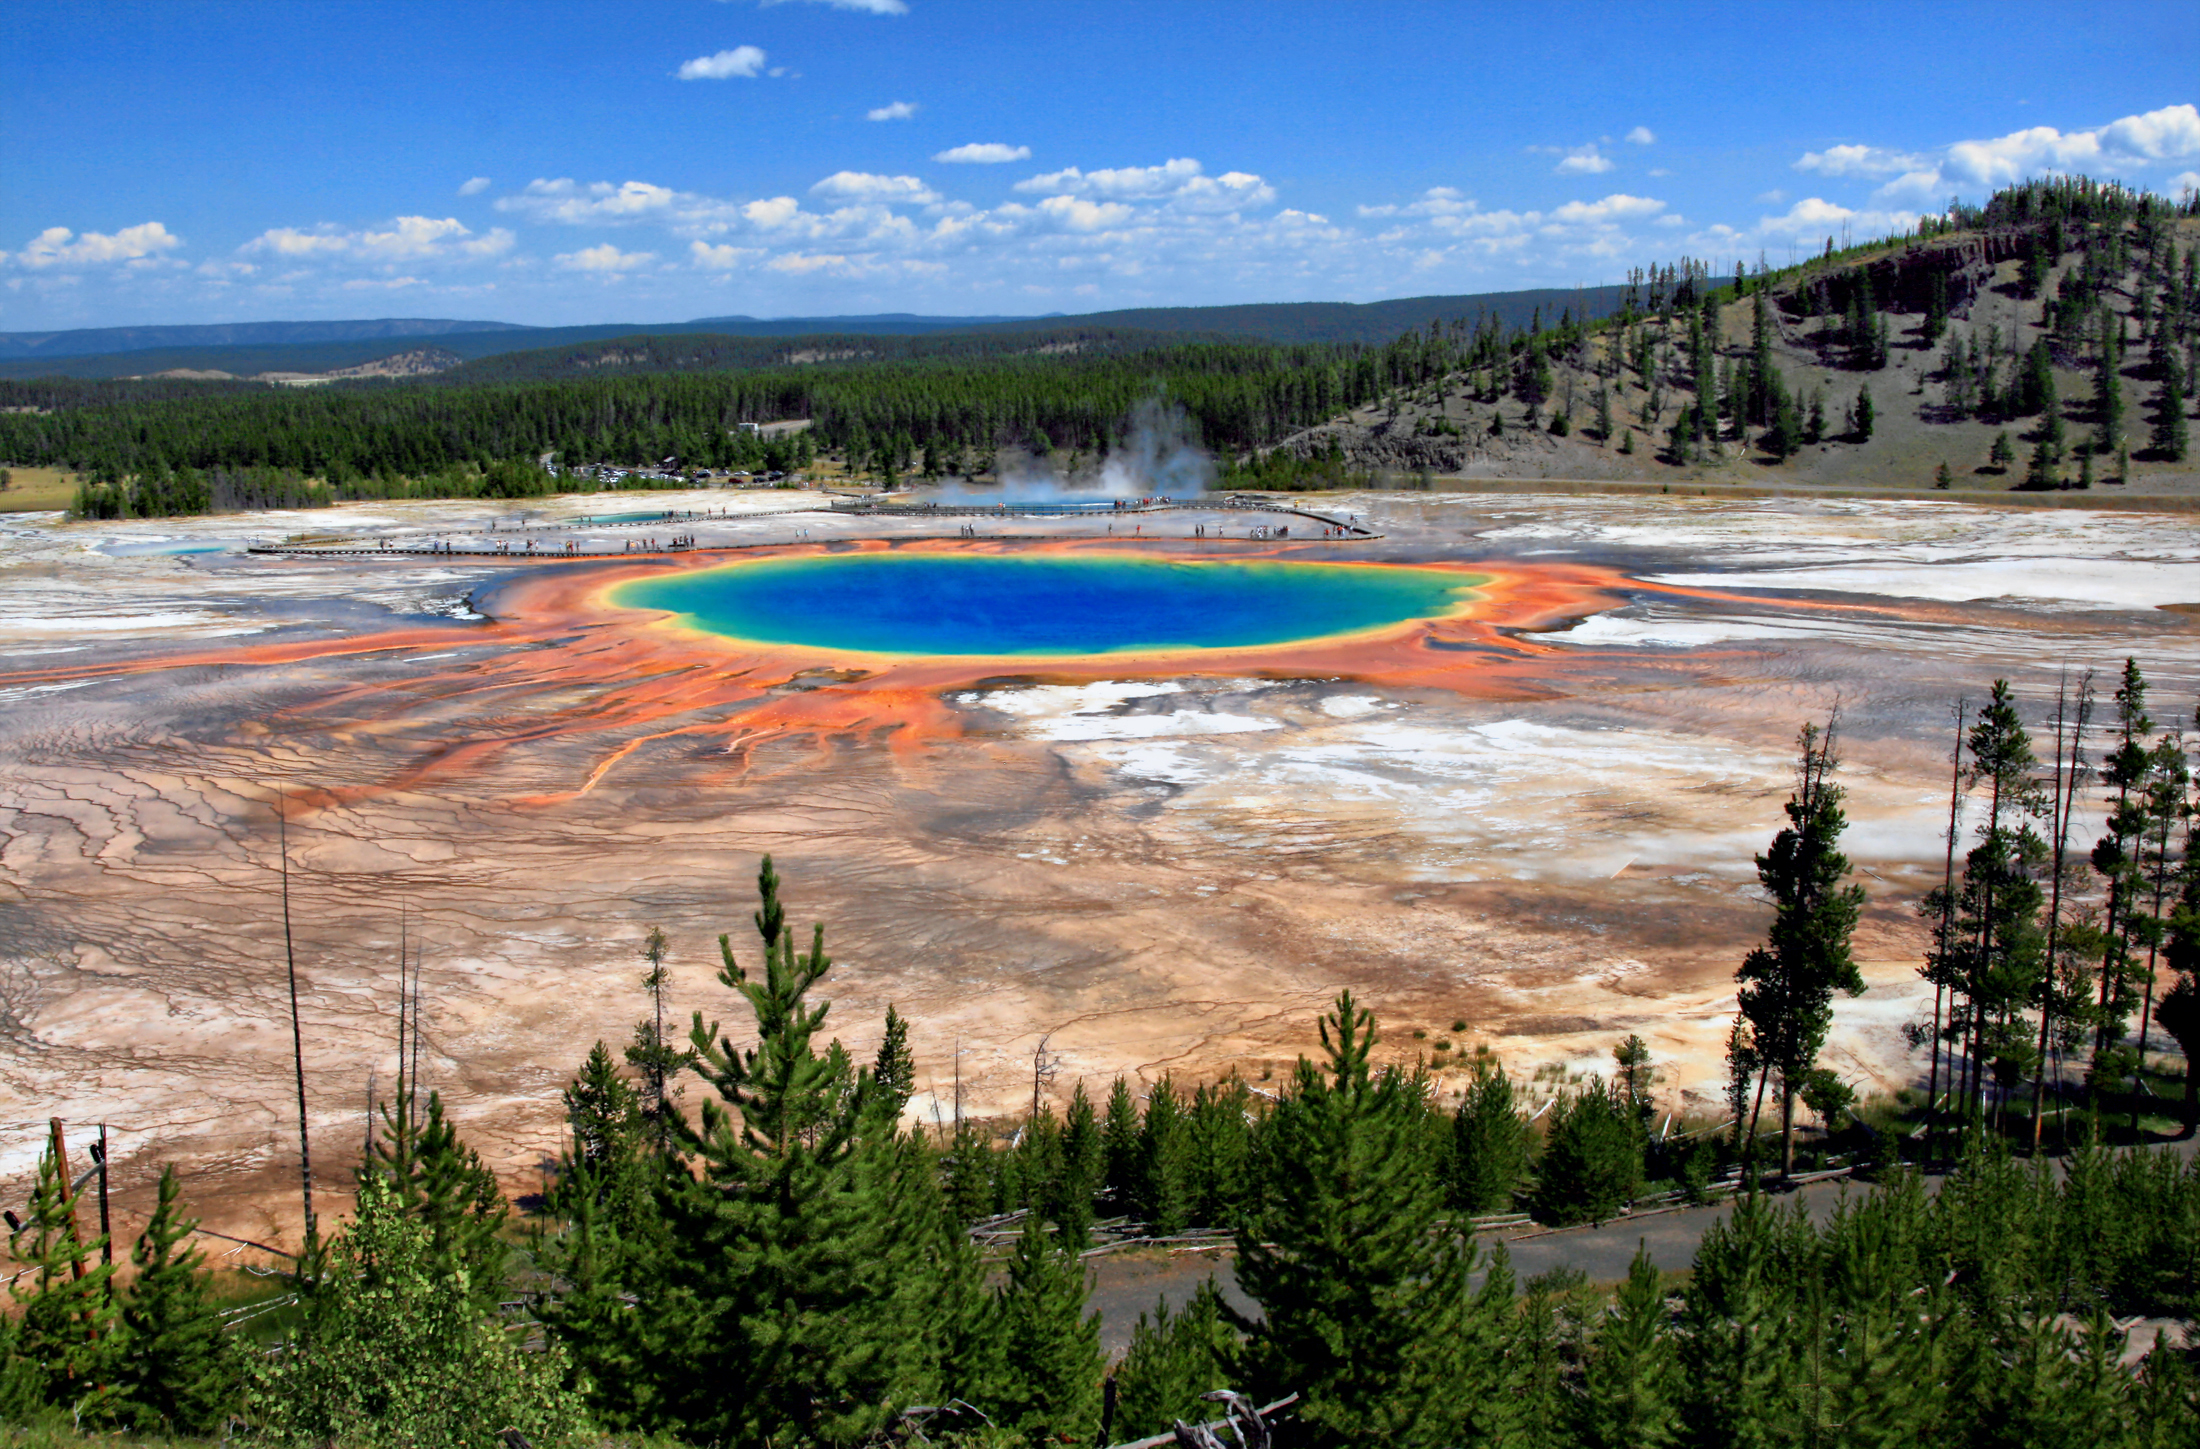 Beberapa Hal Yang Bisa Dilakukan Saat Sedang di Taman Nasional Yellowstone